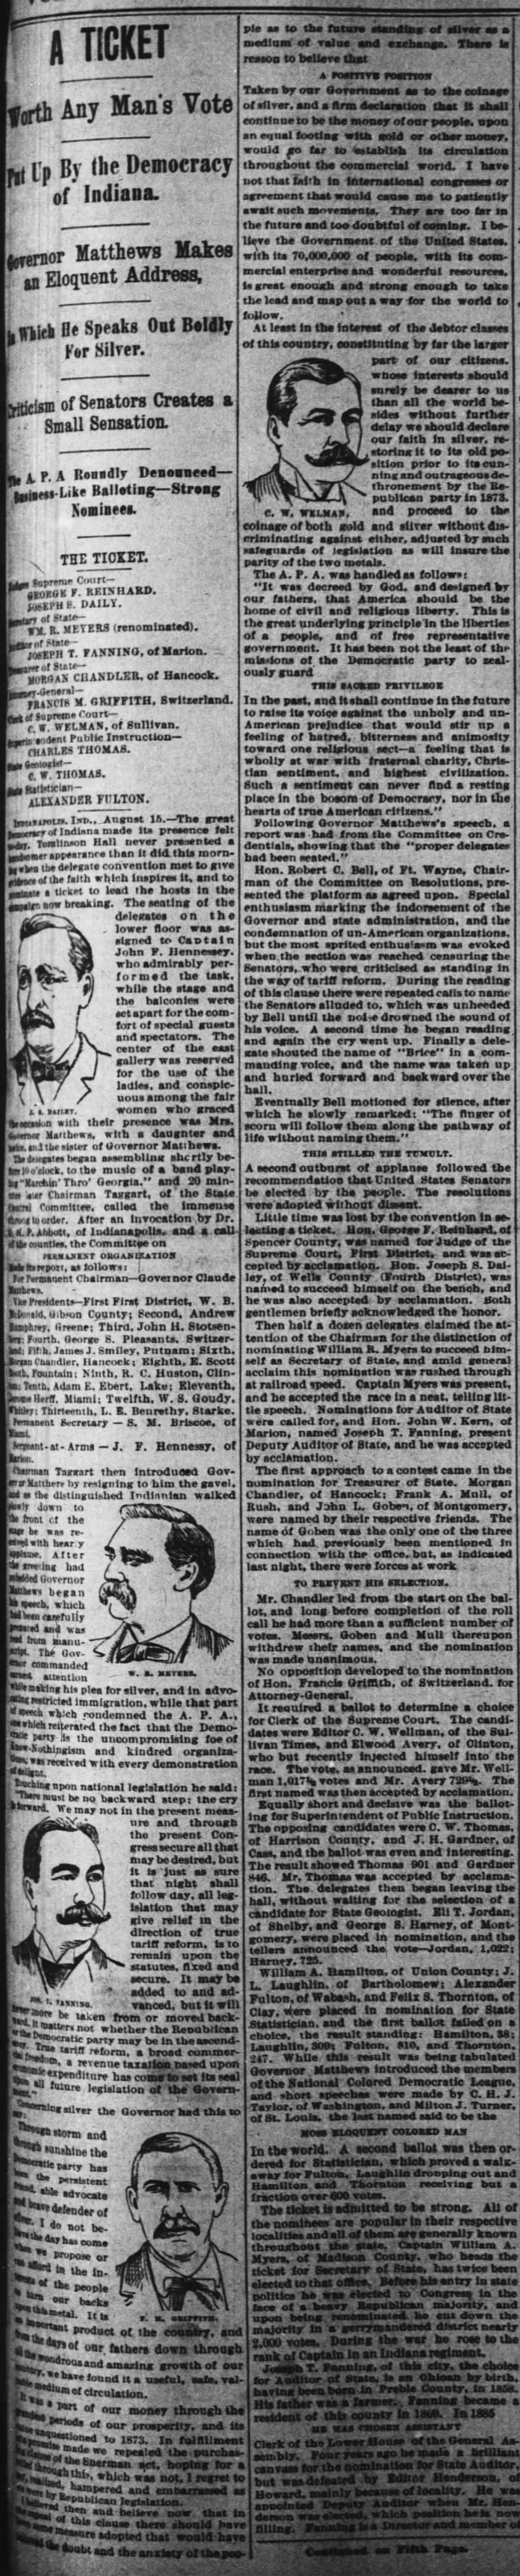 1894-08-16-CincinnatiEnquirer-p1-ATicket